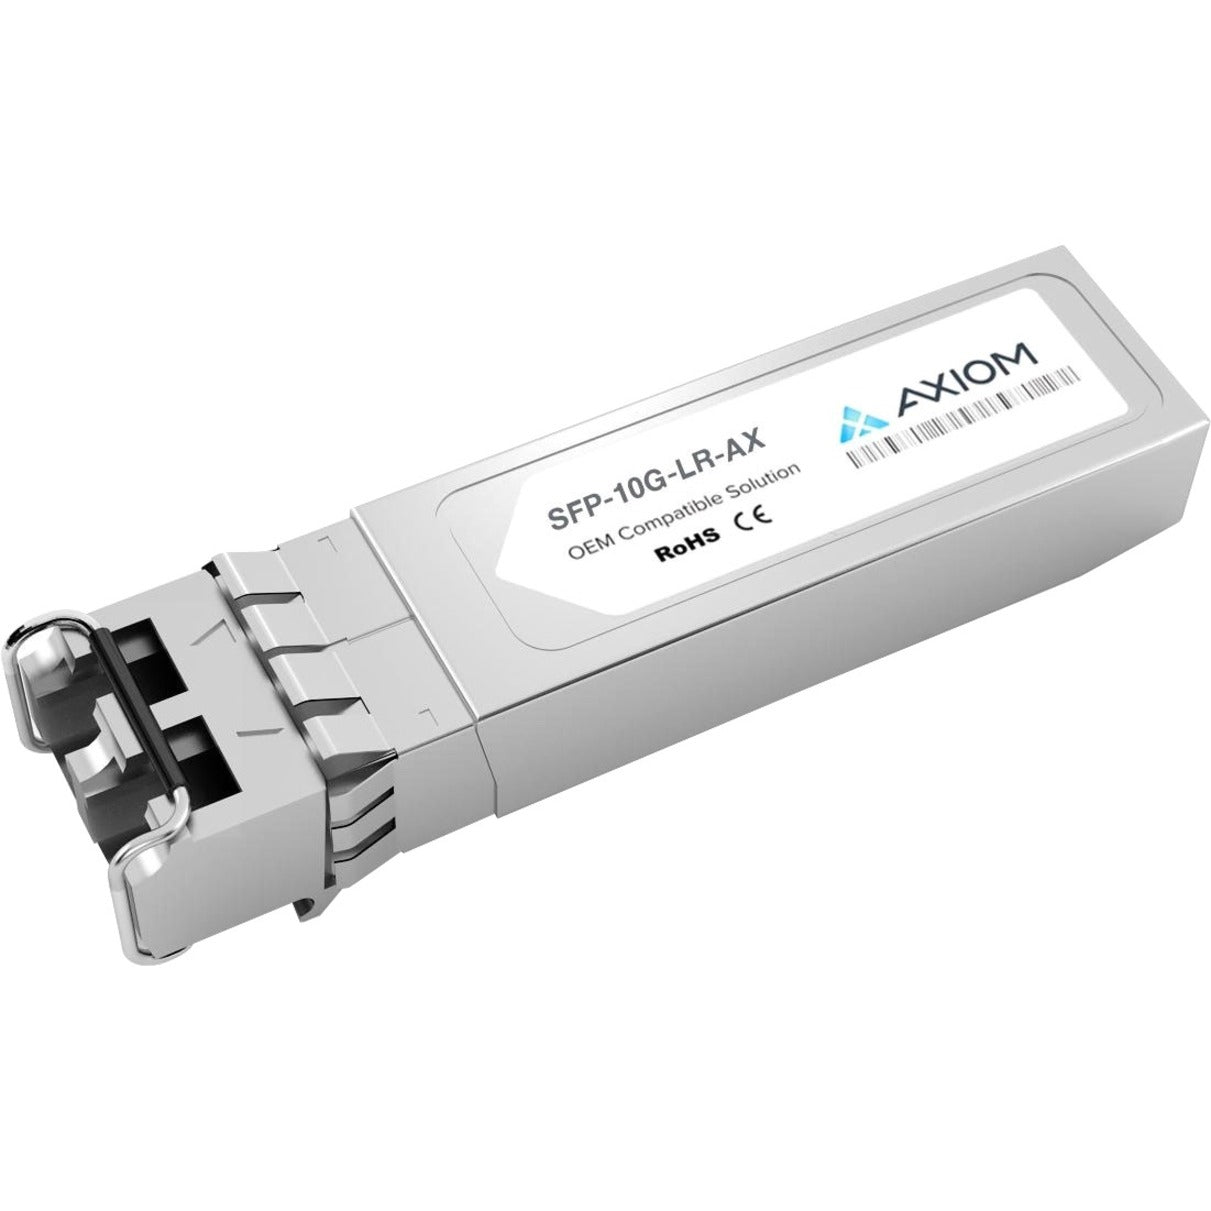 Axiom SFP-10G-LR-AX 10GBASE-LR SFP+ Transceiver for Cisco, Single-mode, 10 Gigabit Ethernet